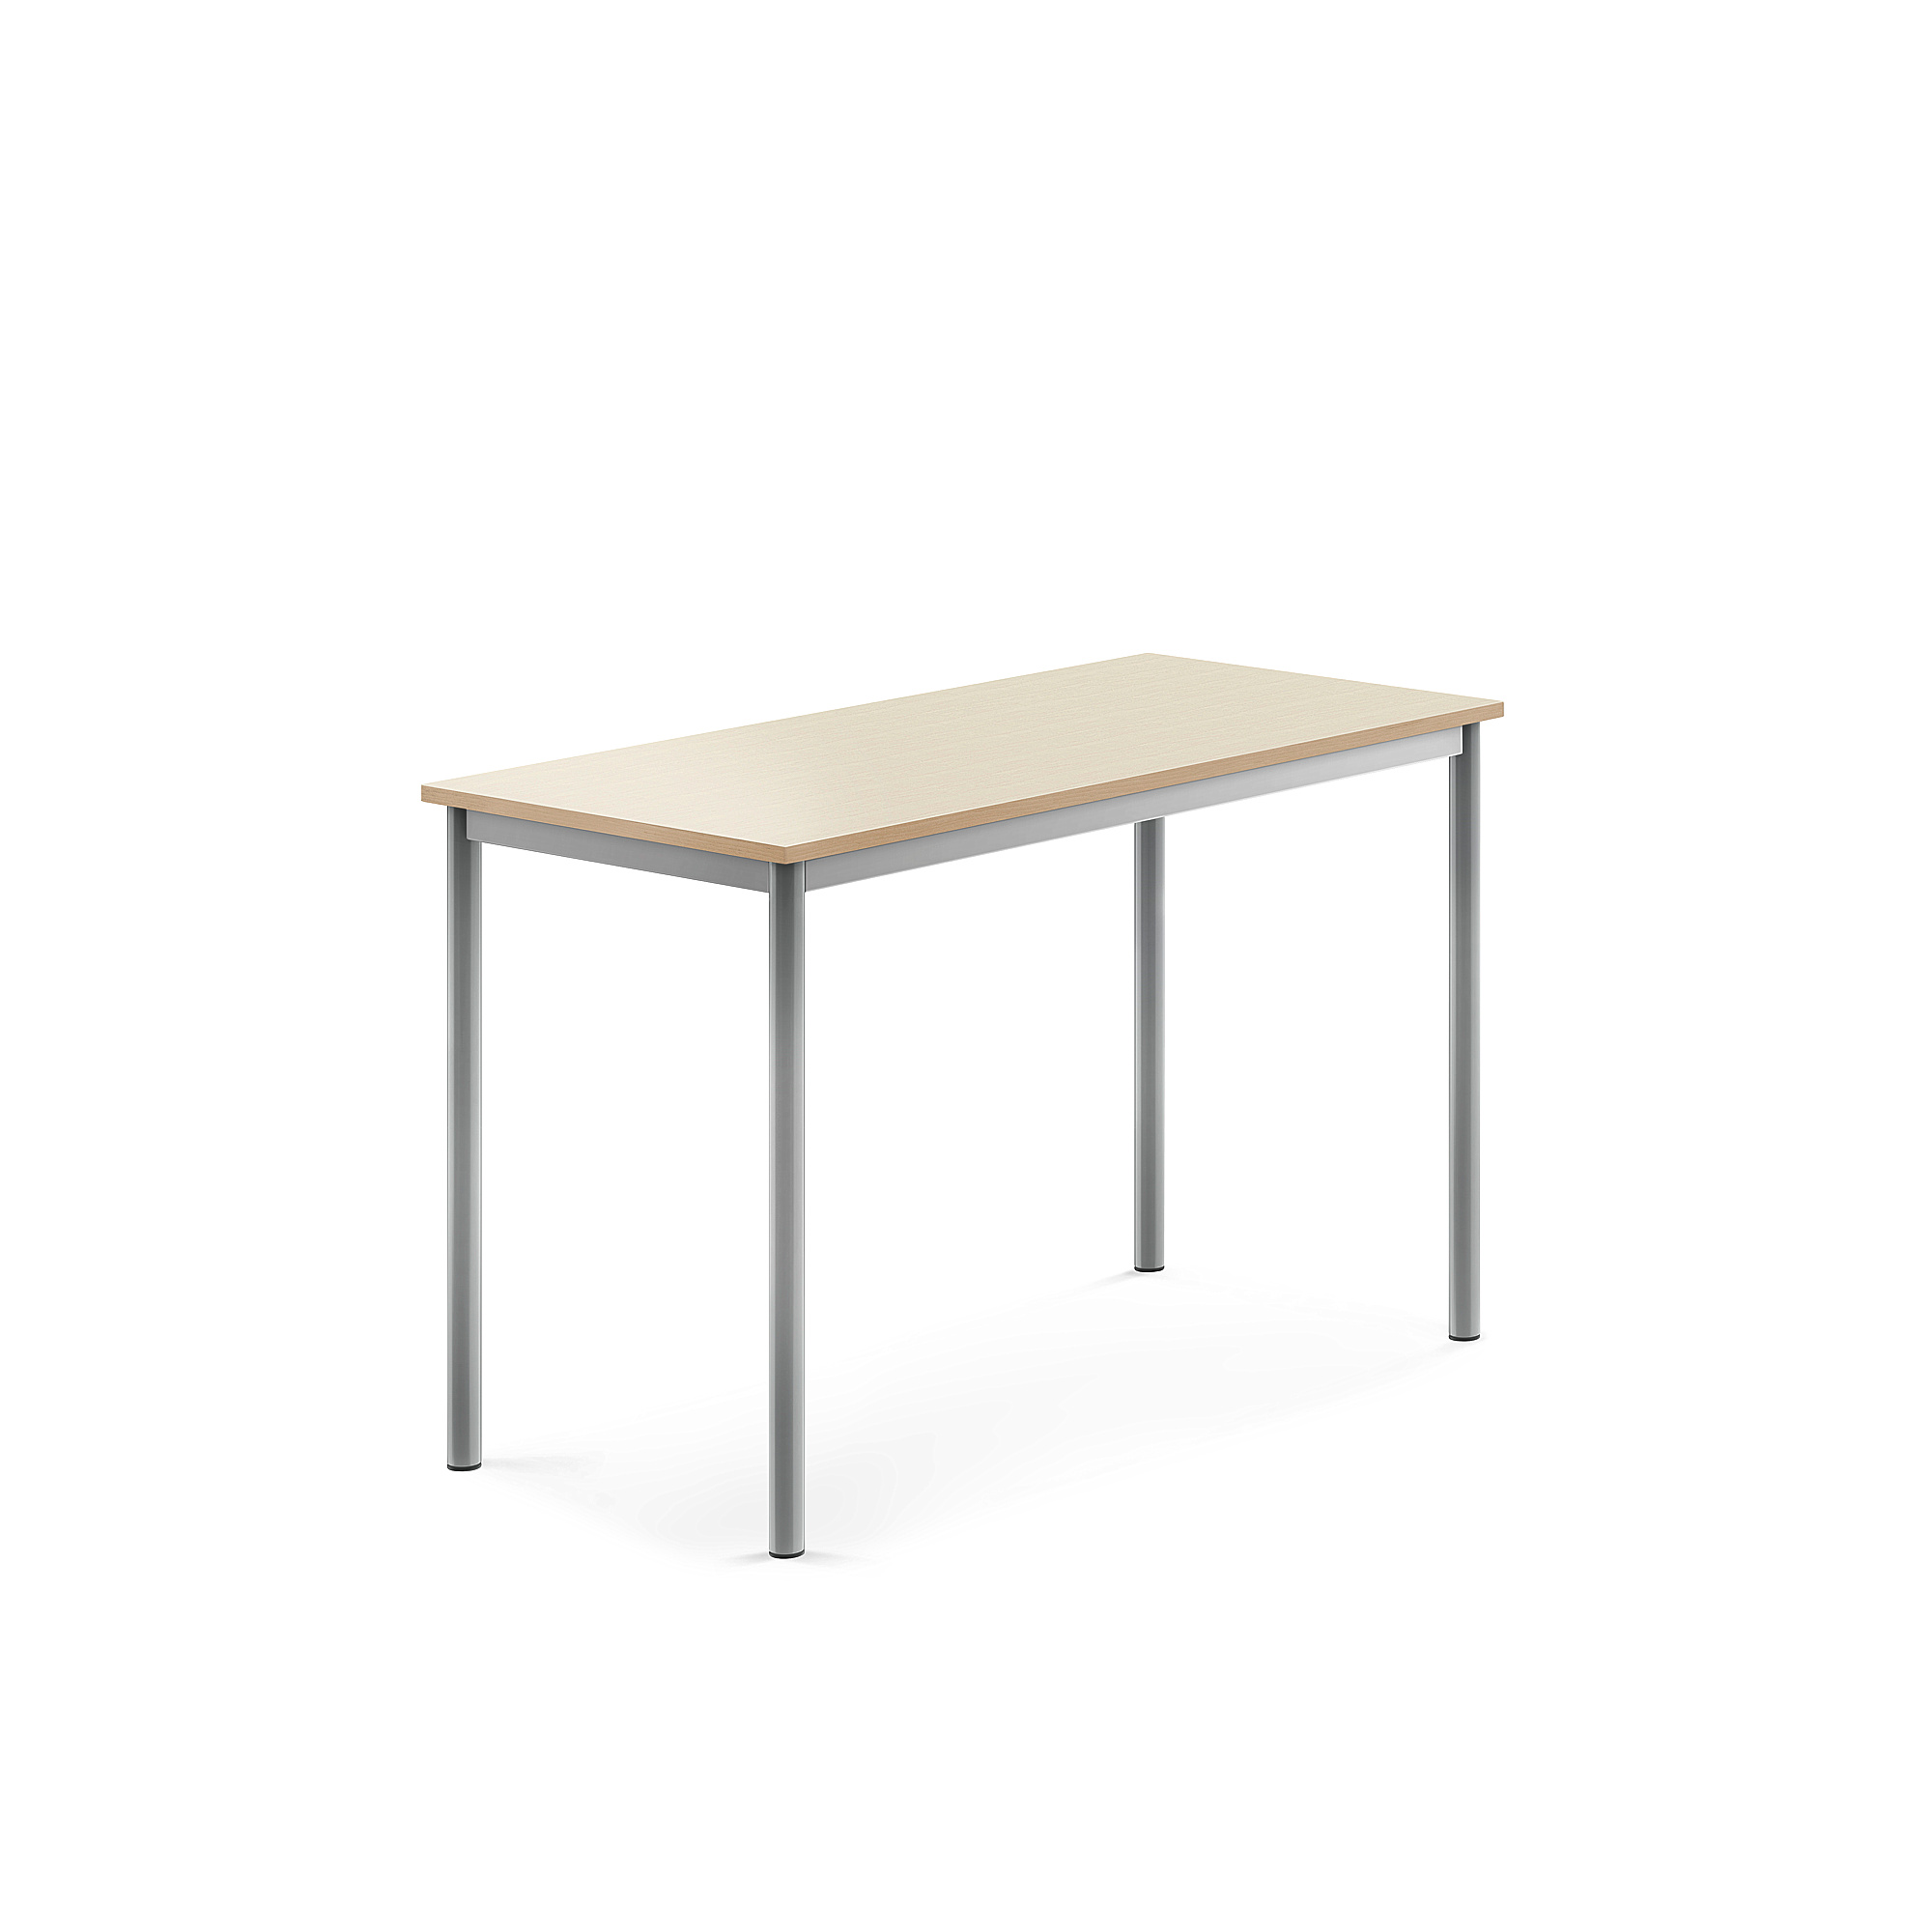 Stůl BORÅS, 1200x600x760 mm, stříbrné nohy, HPL deska, bříza